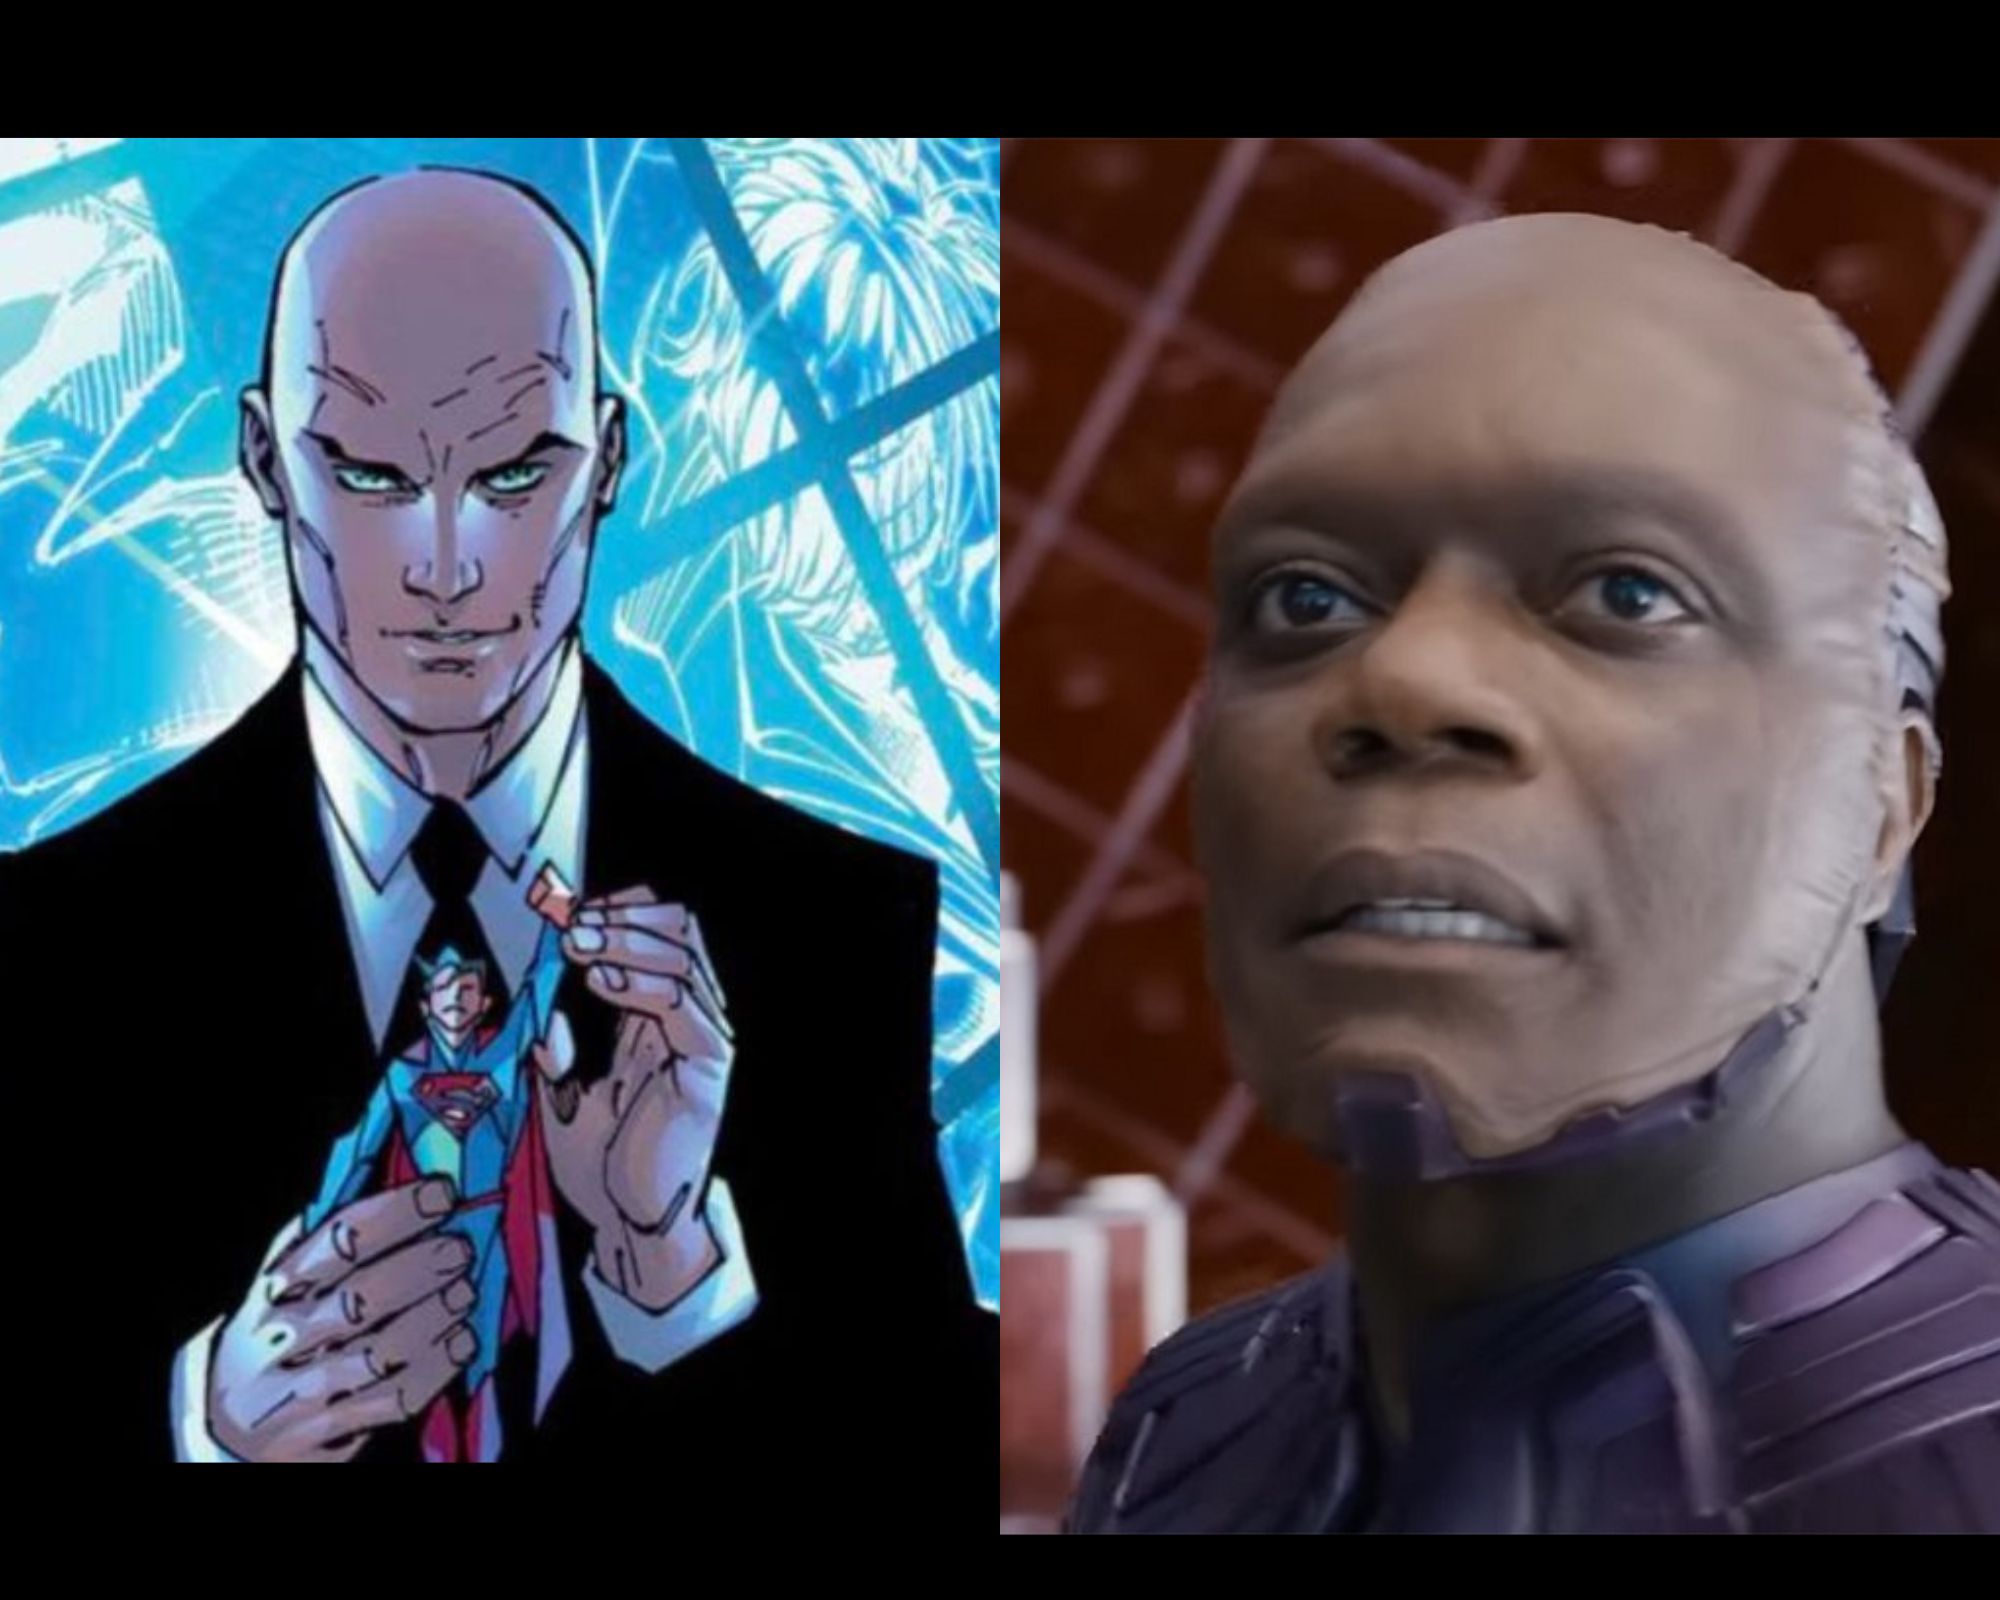 Chukwudi Iwuji as Lex Luthor